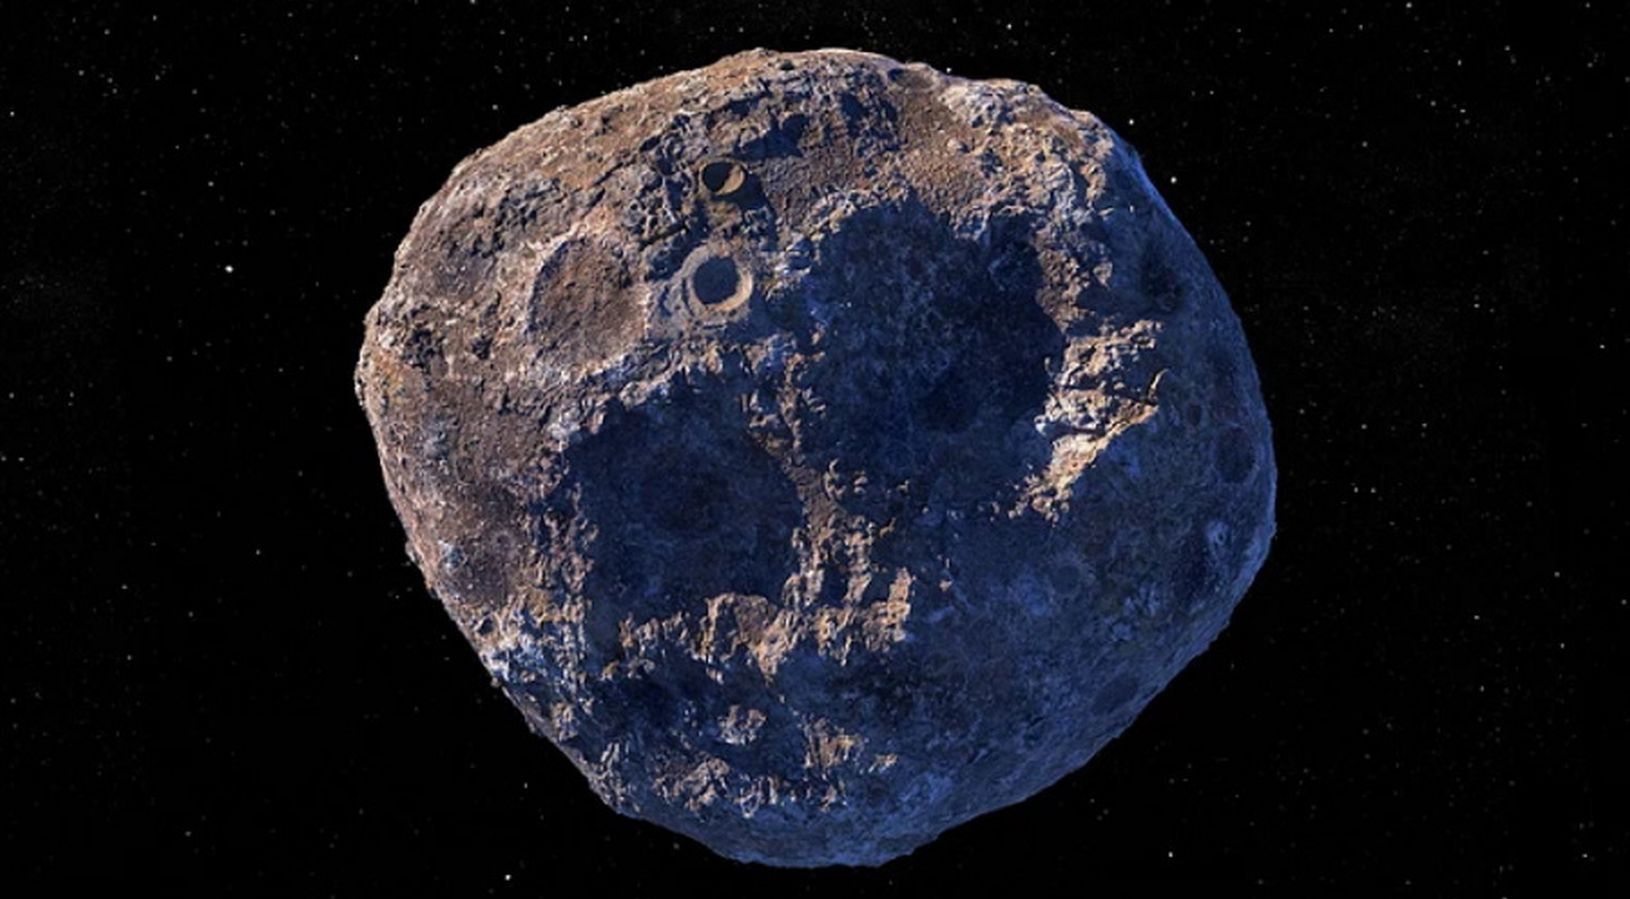 potencjalnie niebezpieczne asteroidy przelecą obok ziemi. jedna po drugiej